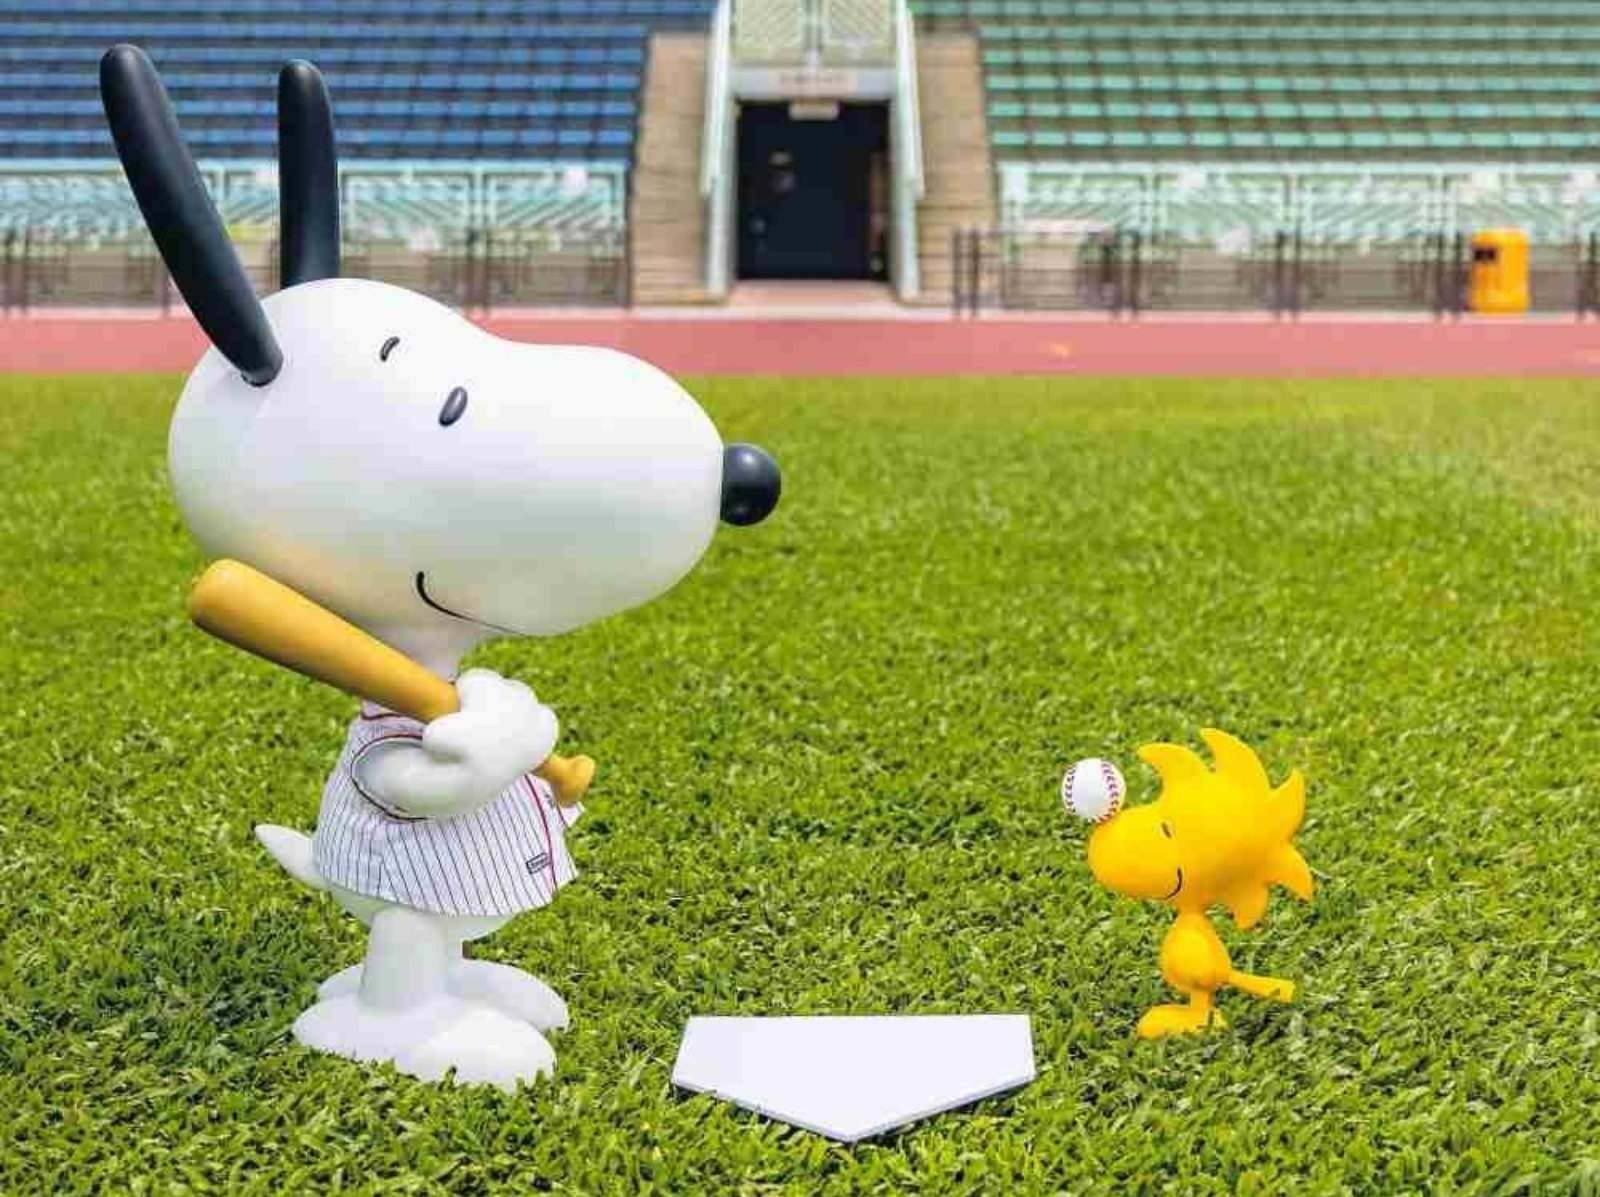 超巨史努比超級 Q！全新收藏平台 FWENCLUB 推出限量 「Chill”as Snoopy 2021 棒球造型」1:1 模型公仔